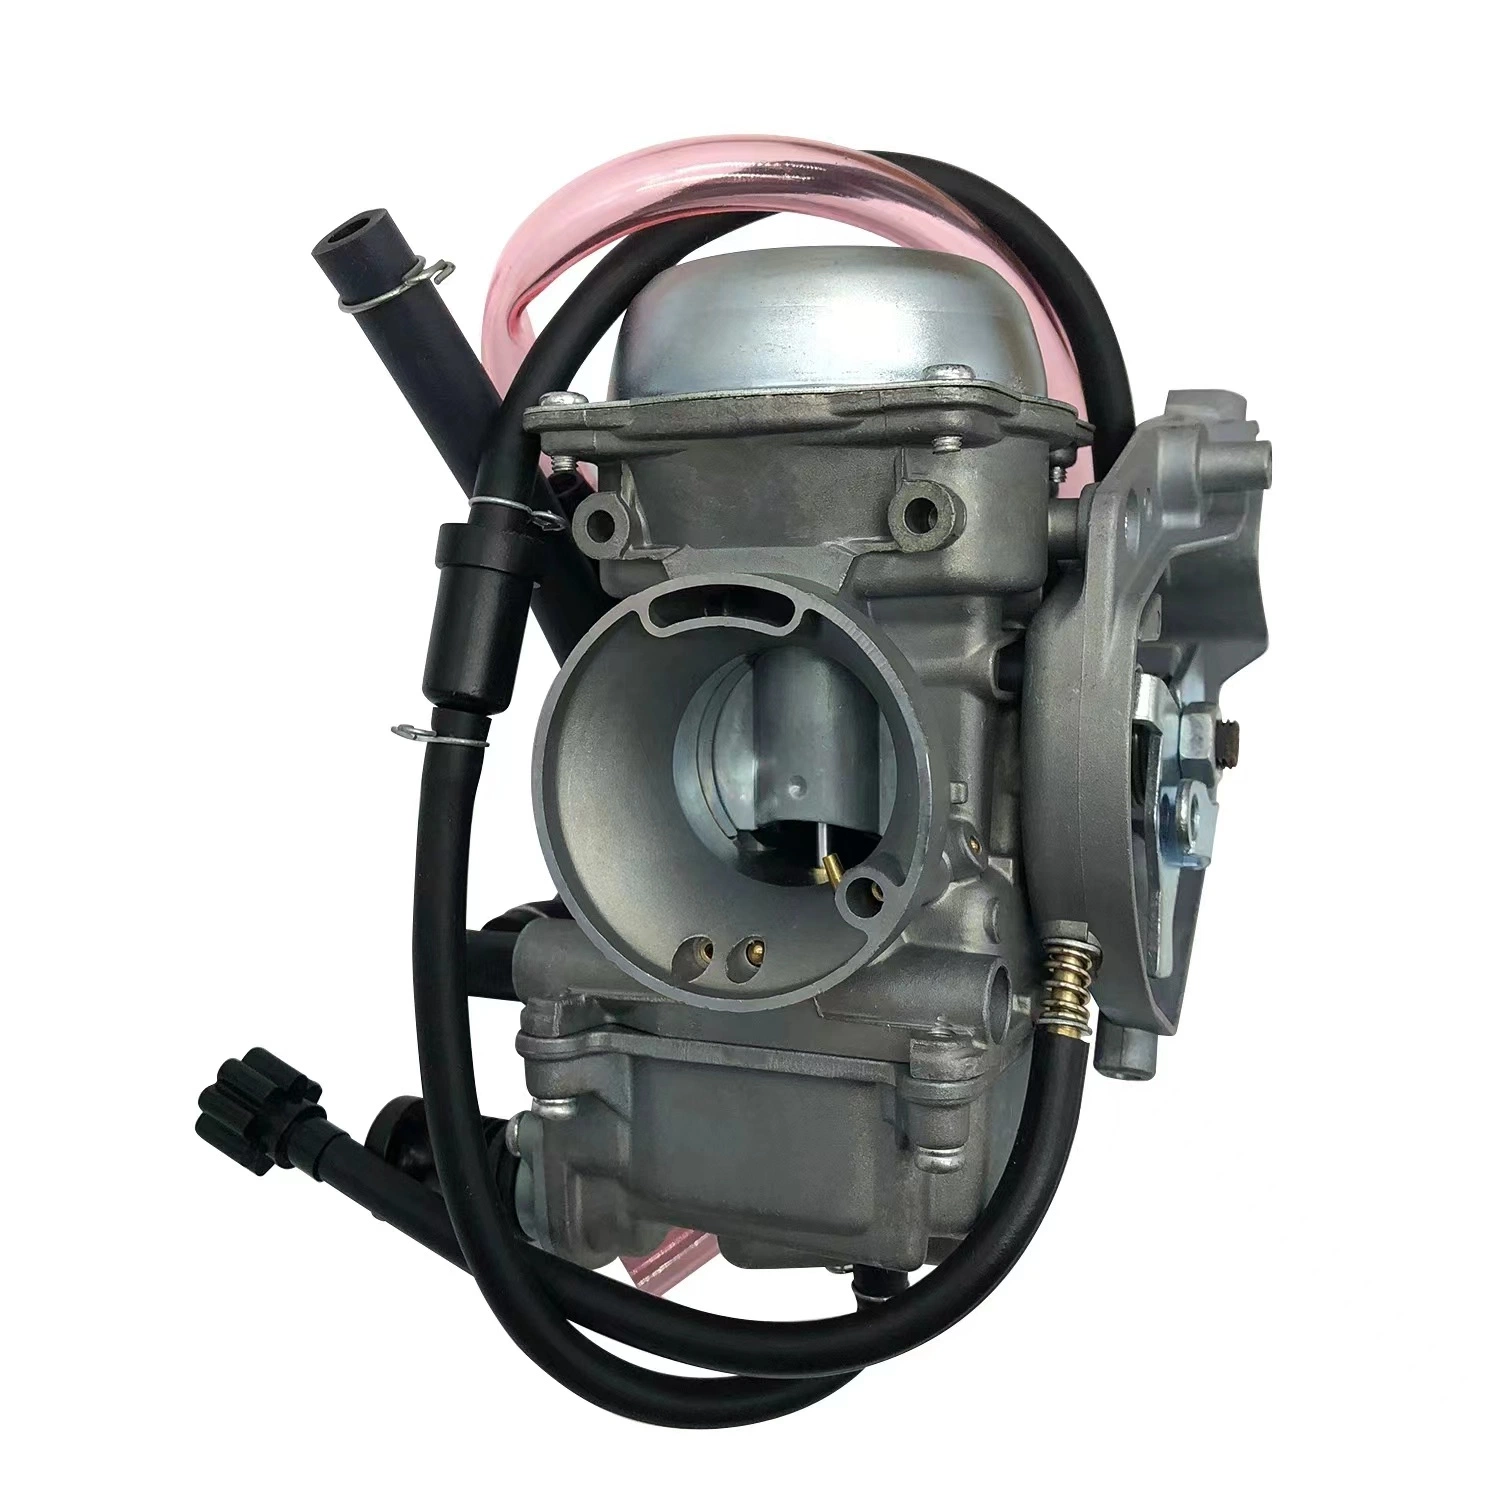 Motor de peças de motociclos adequado para TV Kawasaki Prairie 400 Kvf400 19Factory Direct Sales Quality Assurance